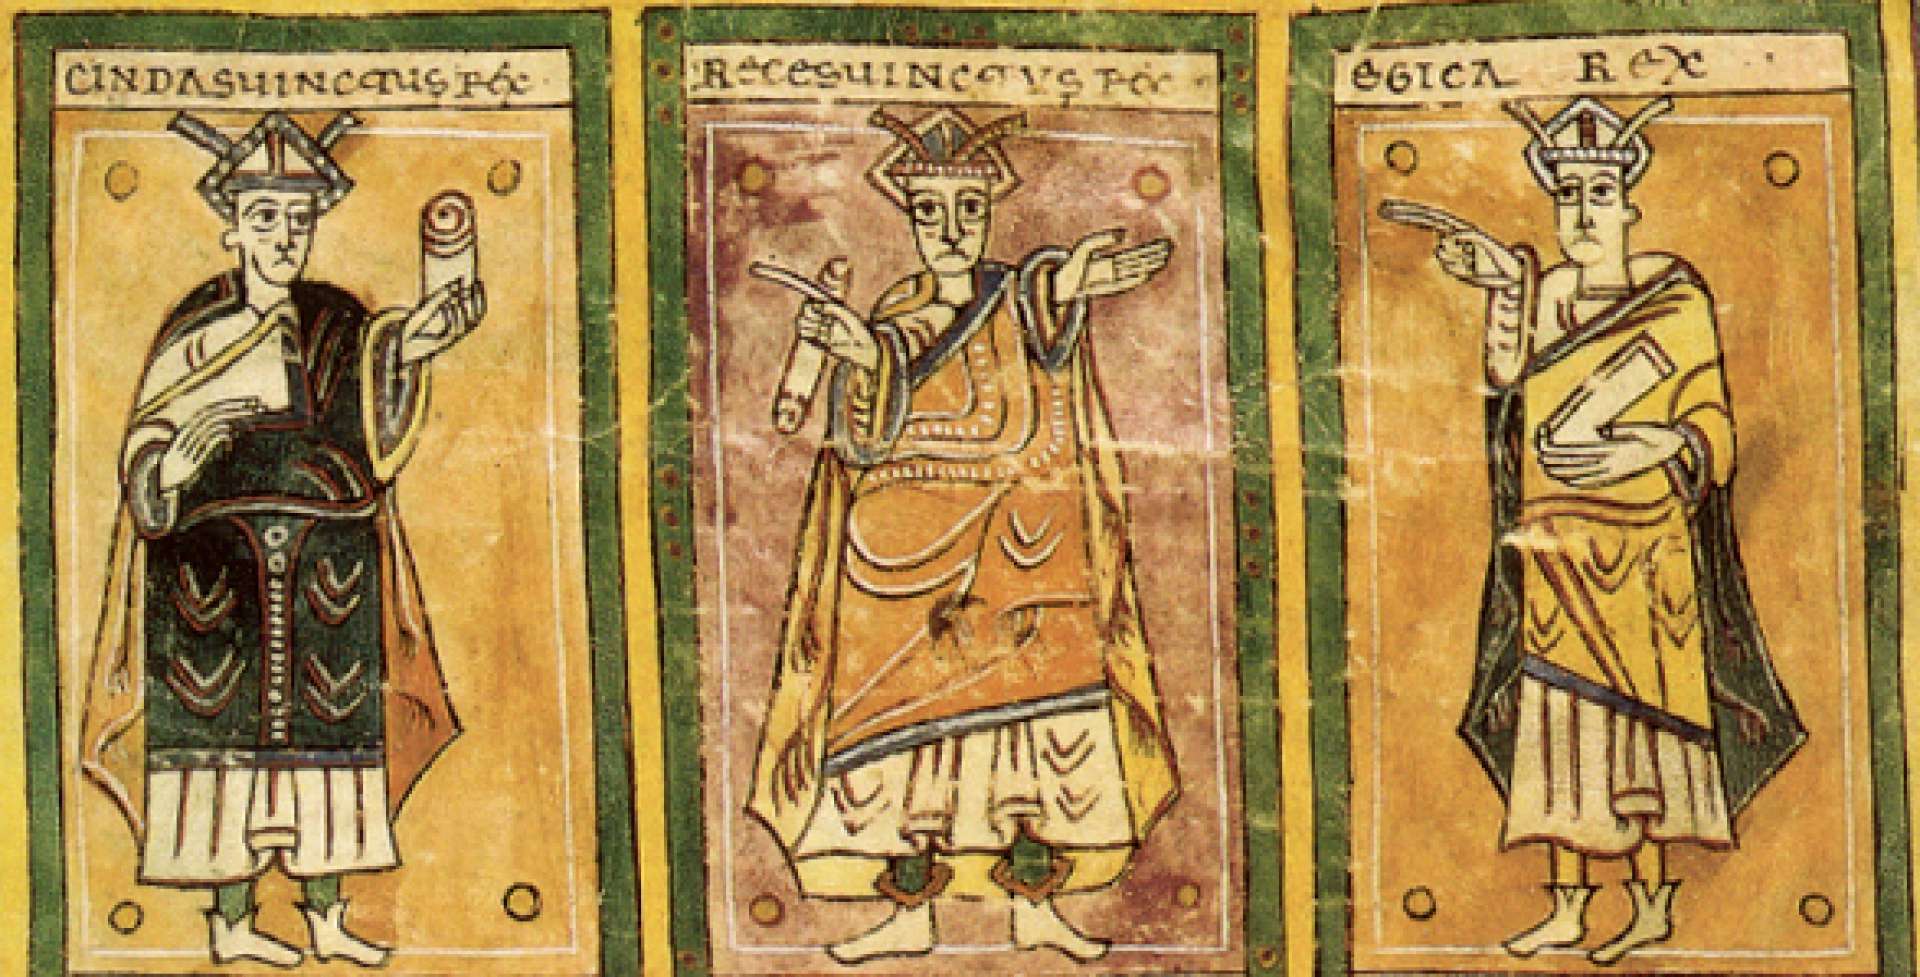 Três reis dos visigodos, povo germânico que falava o gótico